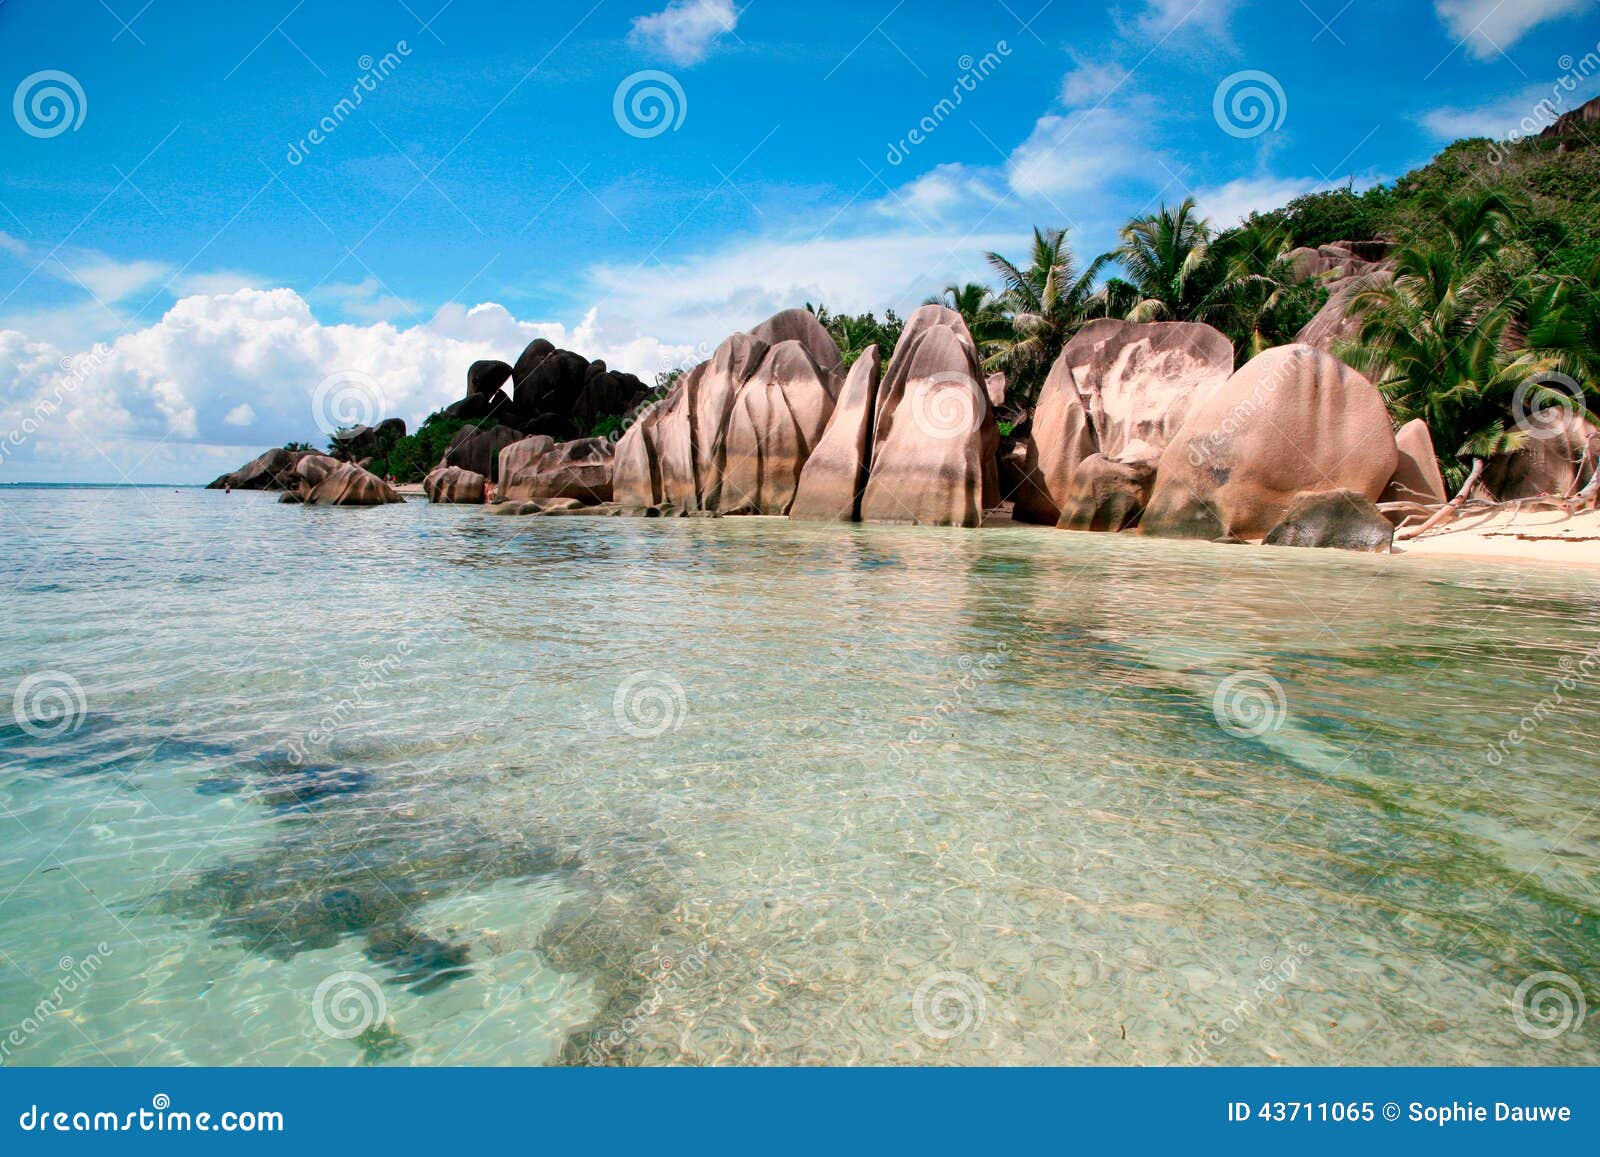 anse source d'argent beach, la digue island, seychelles